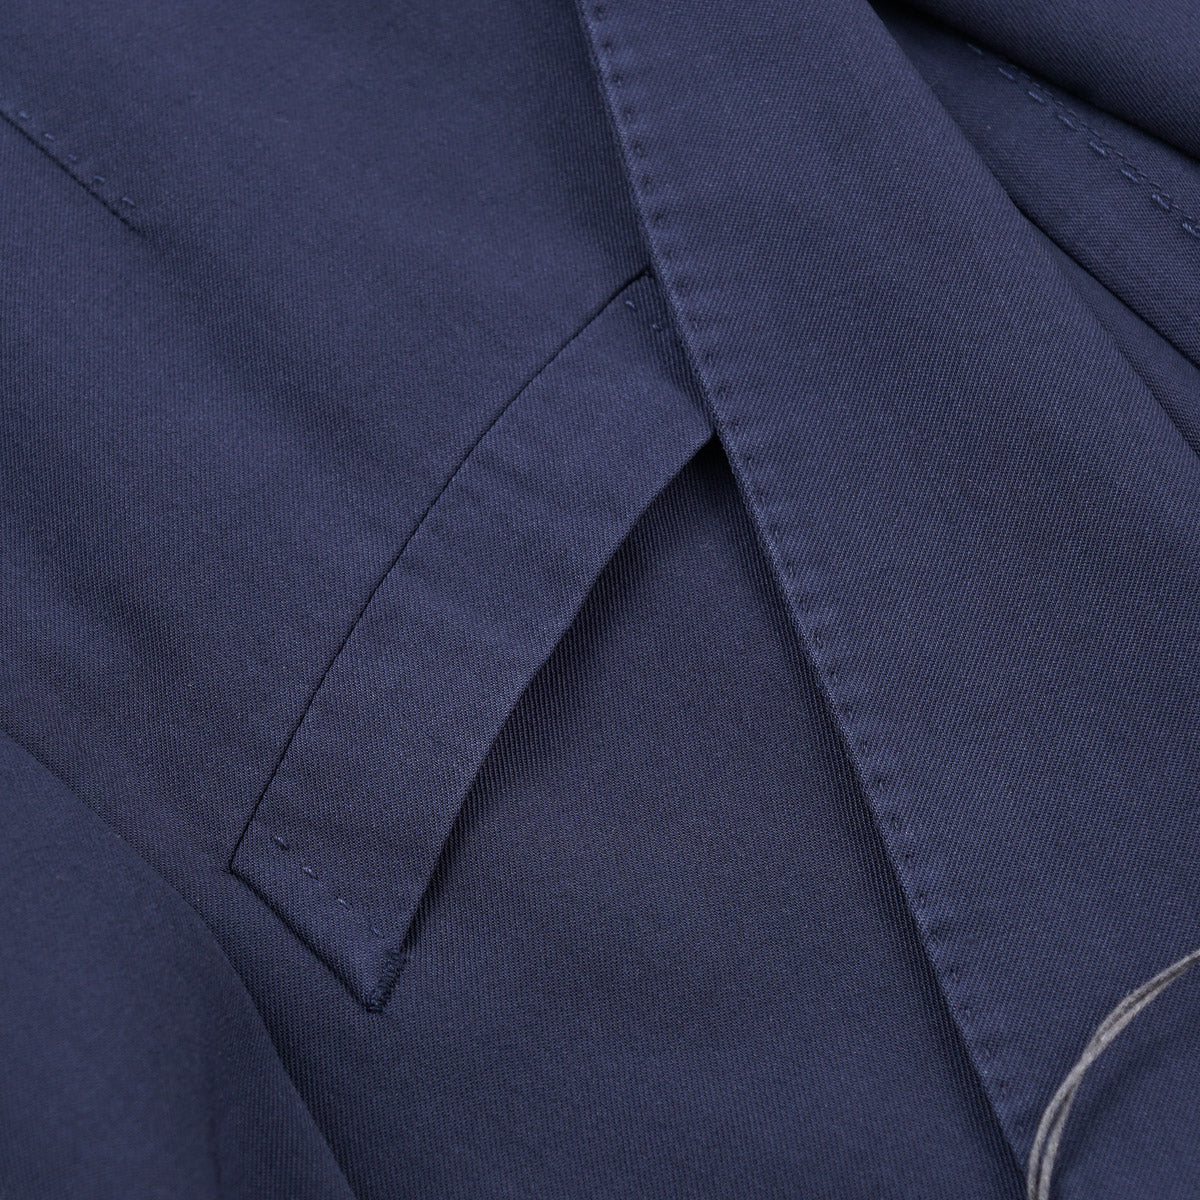 Boglioli Wool 'K Jacket' Sport Coat - Top Shelf Apparel